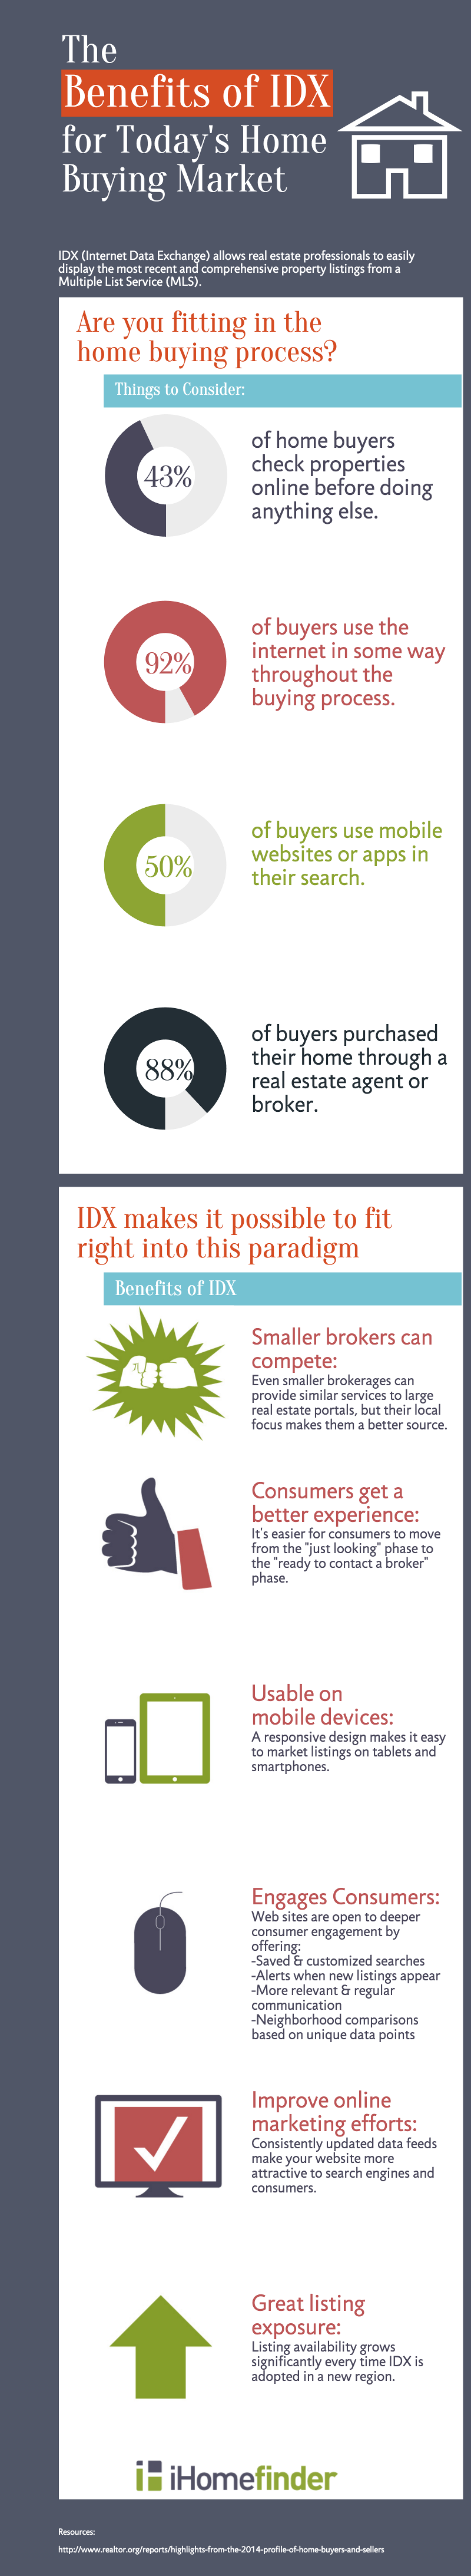 ihomefinder Benefits of IDX